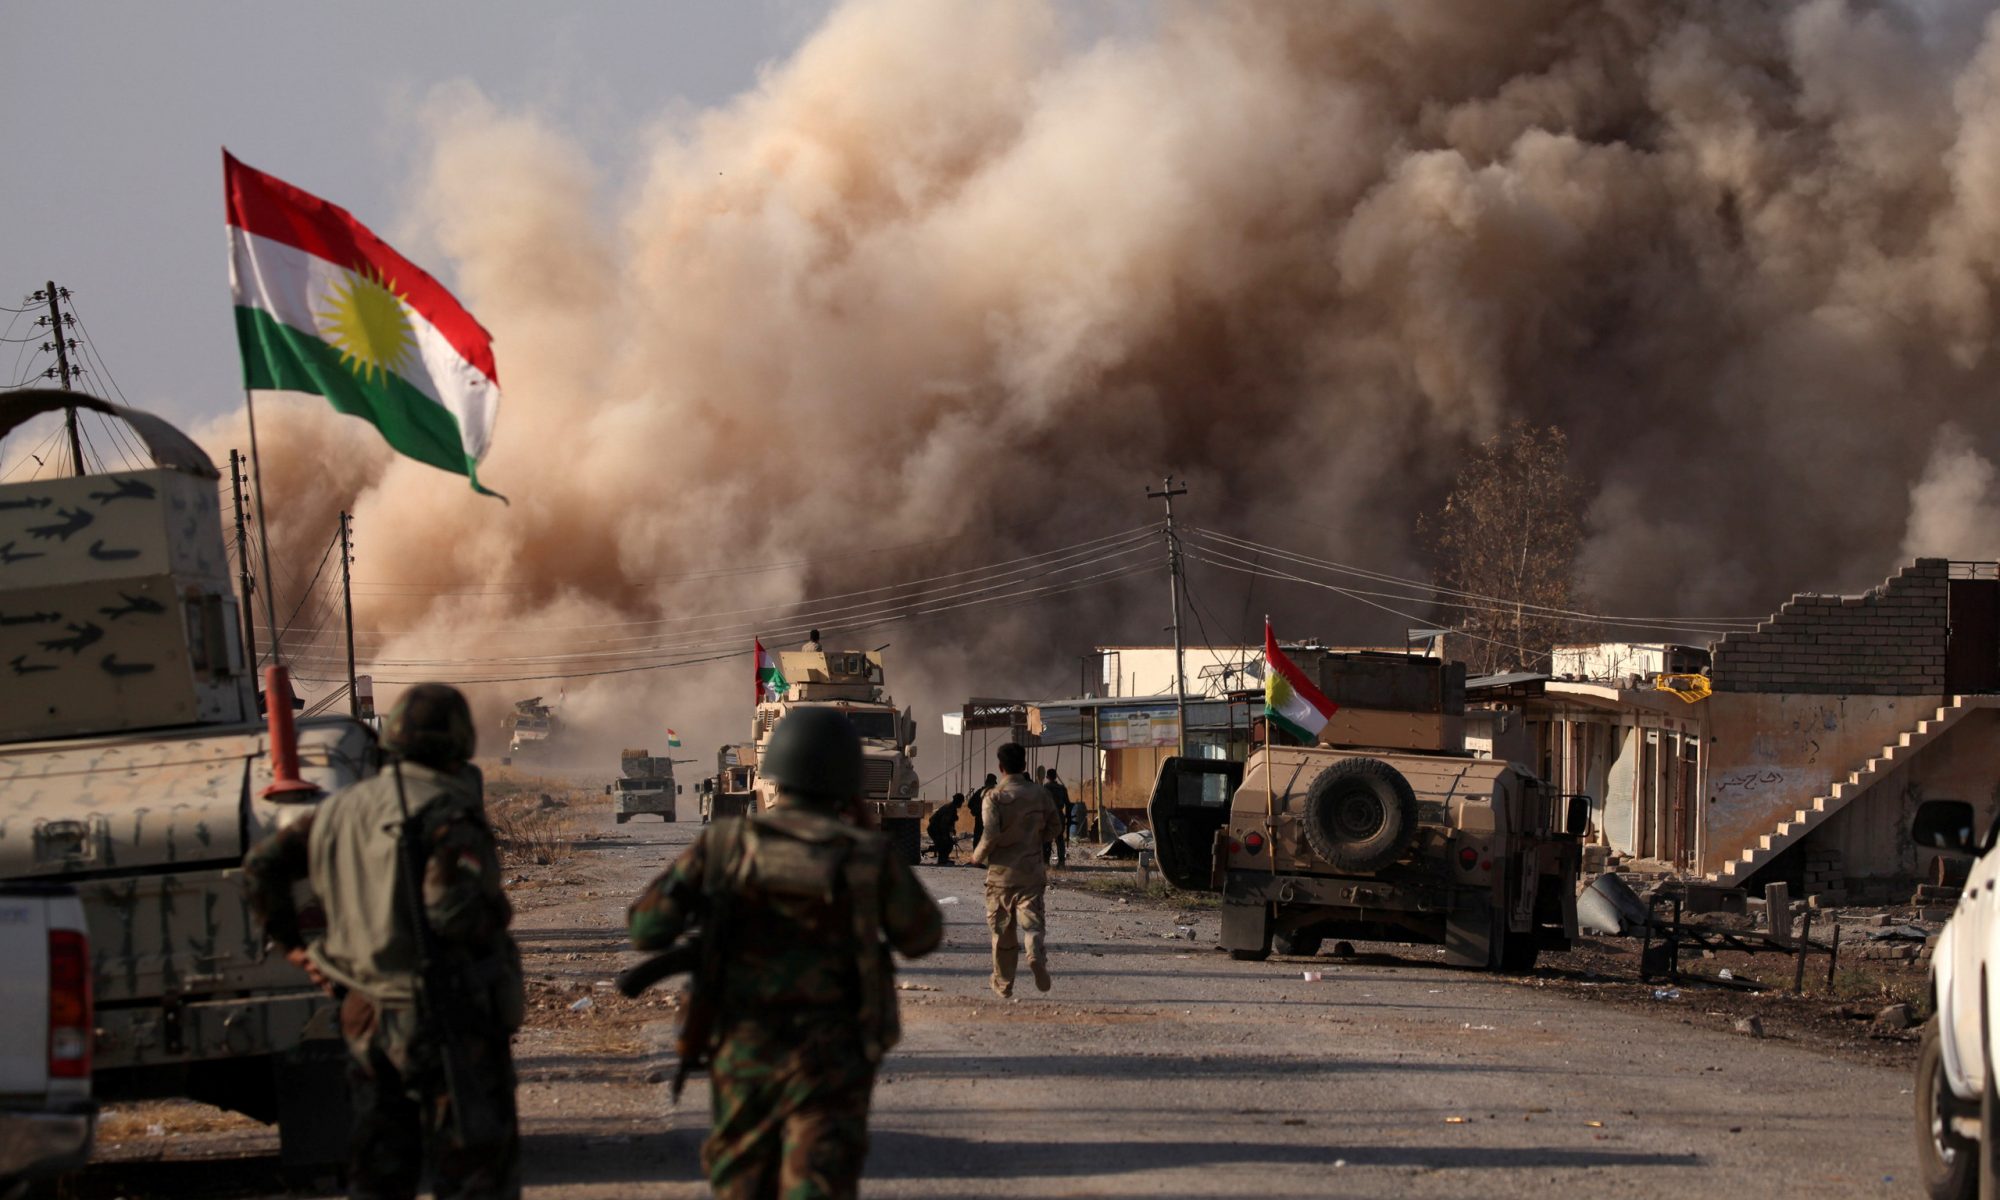 Şehit ve Enfal Bakanlığı, Kürdistan Bölgesi topraklarının Peşmergelerin kanıyla IŞİD terörüne karşı korunduğunu, IŞİD ile mücadelede bin 755 Peşmerge’nin şehit, 10 bin Peşmerge’nin ise bu savaşta yaralandığını açıkladı. BasNews’e konuşan Kürdistan Bölgesi Şehit ve Enfal Bakan Yardımcısı Berîvan Hemdî, IŞİD terörü ile yürütülen mücadelede bin 755 Peşmerge’nin şehit olduğunu, 10 bin Peşmerge’nin de yaralandığını belirterek, “Kürdistan topraklarının Peşmerge’nin kanı sayesinde korundu” dedi. IŞİD’e karşı mücadelede Koalisyon Güçleri’nin Irak ve Peşmerge güçlerine destek verdiğini başka hiçbir gücün Irak ve Kürdistan Bölgesi topraklarında her iki güce destek vermediğini dile getiren Berîvan Hemdî, “Eğer Peşmerge Güçleri’nin azmi ve iradesi olmasaydı bgün Irak ve Kürdistan Bölgesi topraklarının büyük kısmı teröristlerce işgal edilmiş olacaktı” değerlendirmesinde bulundu Kürdistan Bölgesi Şehit ve Enfal Bakan Yardımcısı Berîvan Hemdî, Kürdistan’ın her ailesinin IŞİD savaşında en az bir Peşmergesi’nin şehit olduğunu belirterek, “IŞİD efsanesine son veren Peşmerge Güçleri olmuştur” dedi.